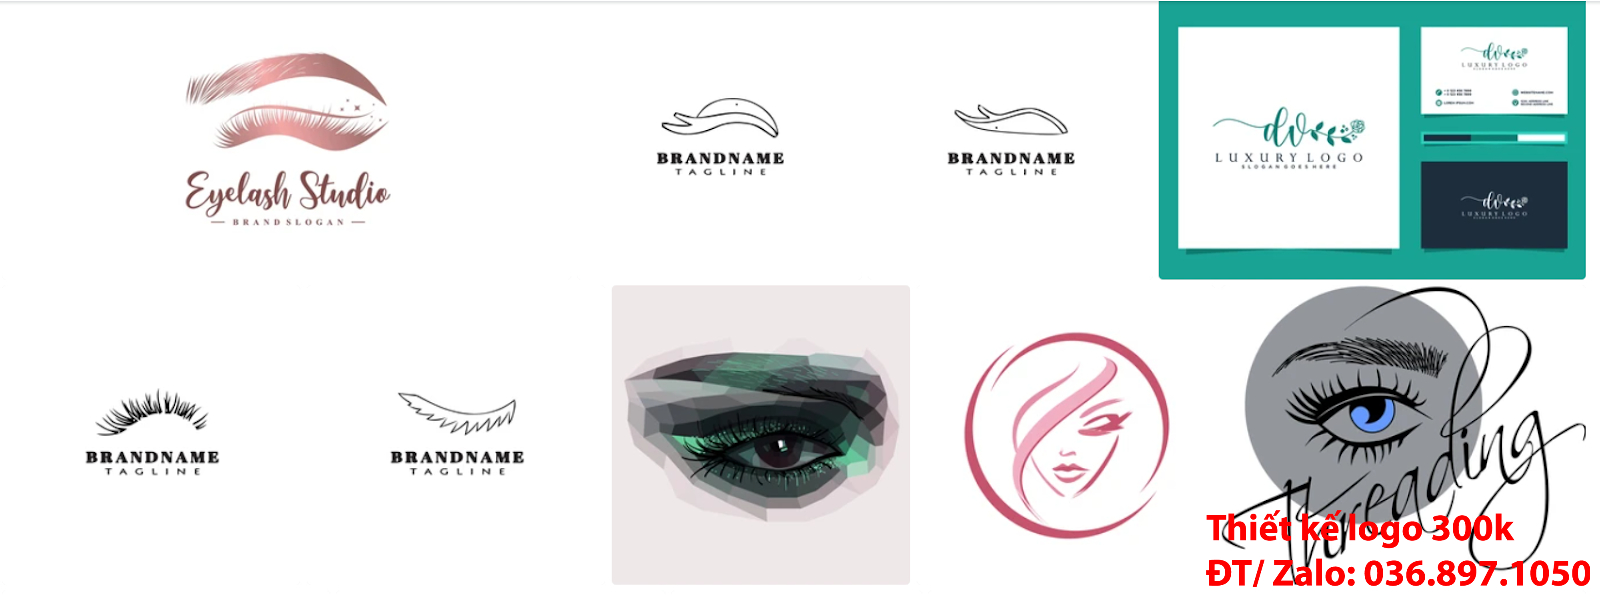 Công ty cung cấp dịch vụ mẫu logo thẩm mỹ lông mi mắt chuyên nghiệp giá rẻ 300k -500k tại Hà Nội